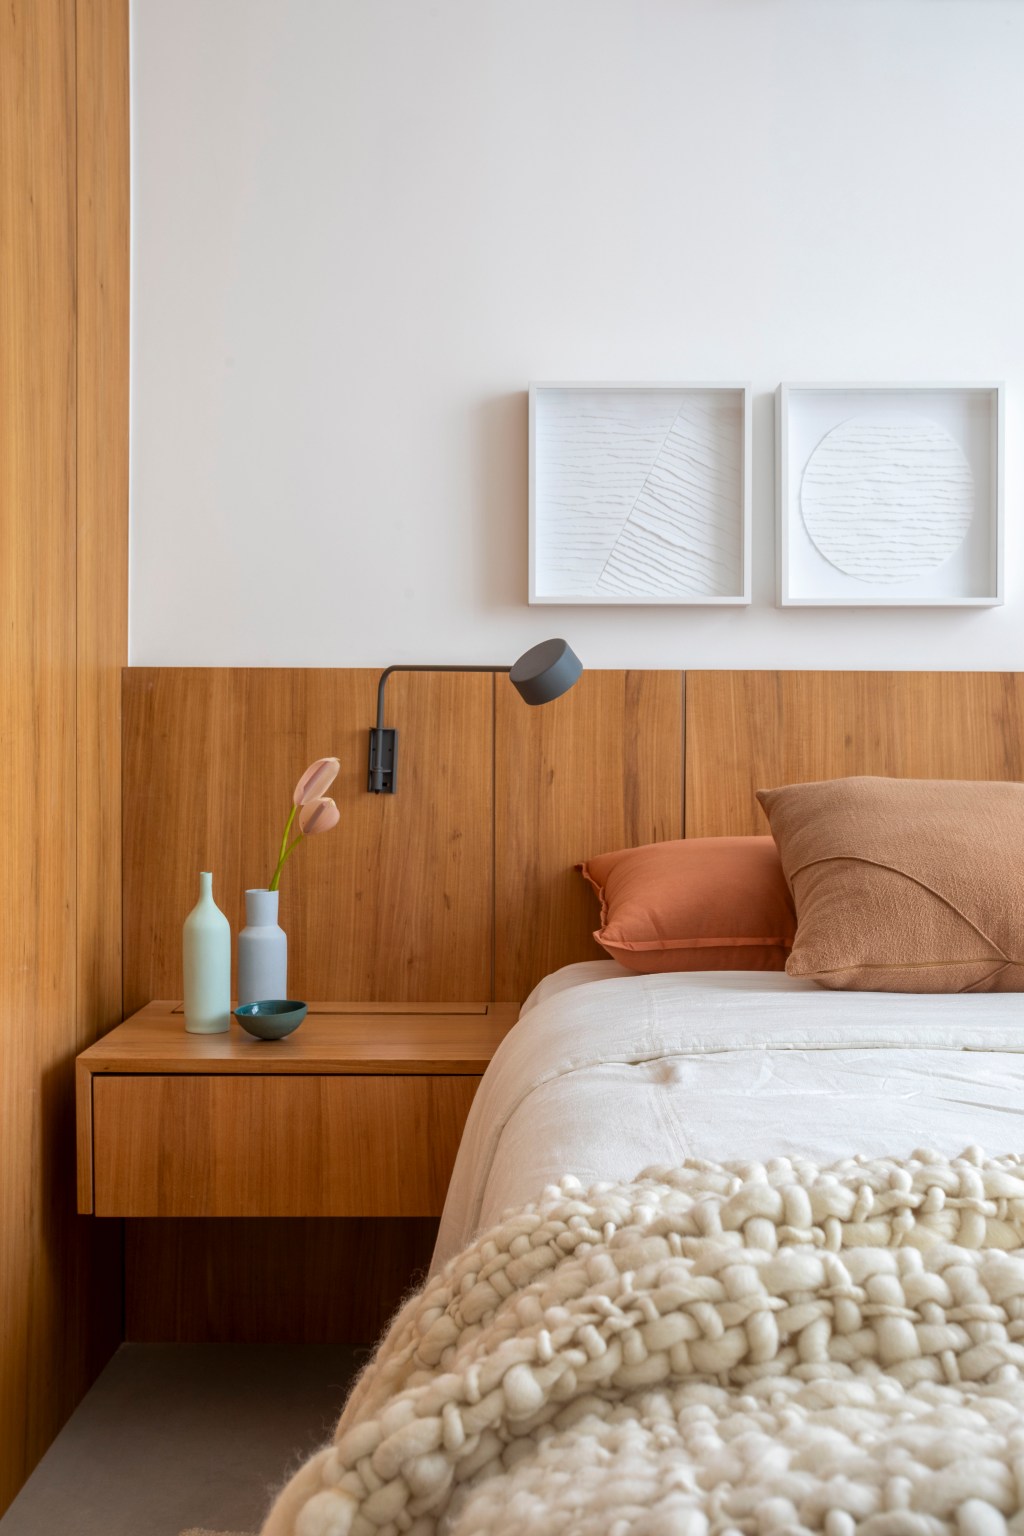 Branco e madeira criam décor cozy em apartamento de 70 m². Projeto de Rafael Ramos. Na foto, quarto de casal com cabeceira de madeira e quadros.